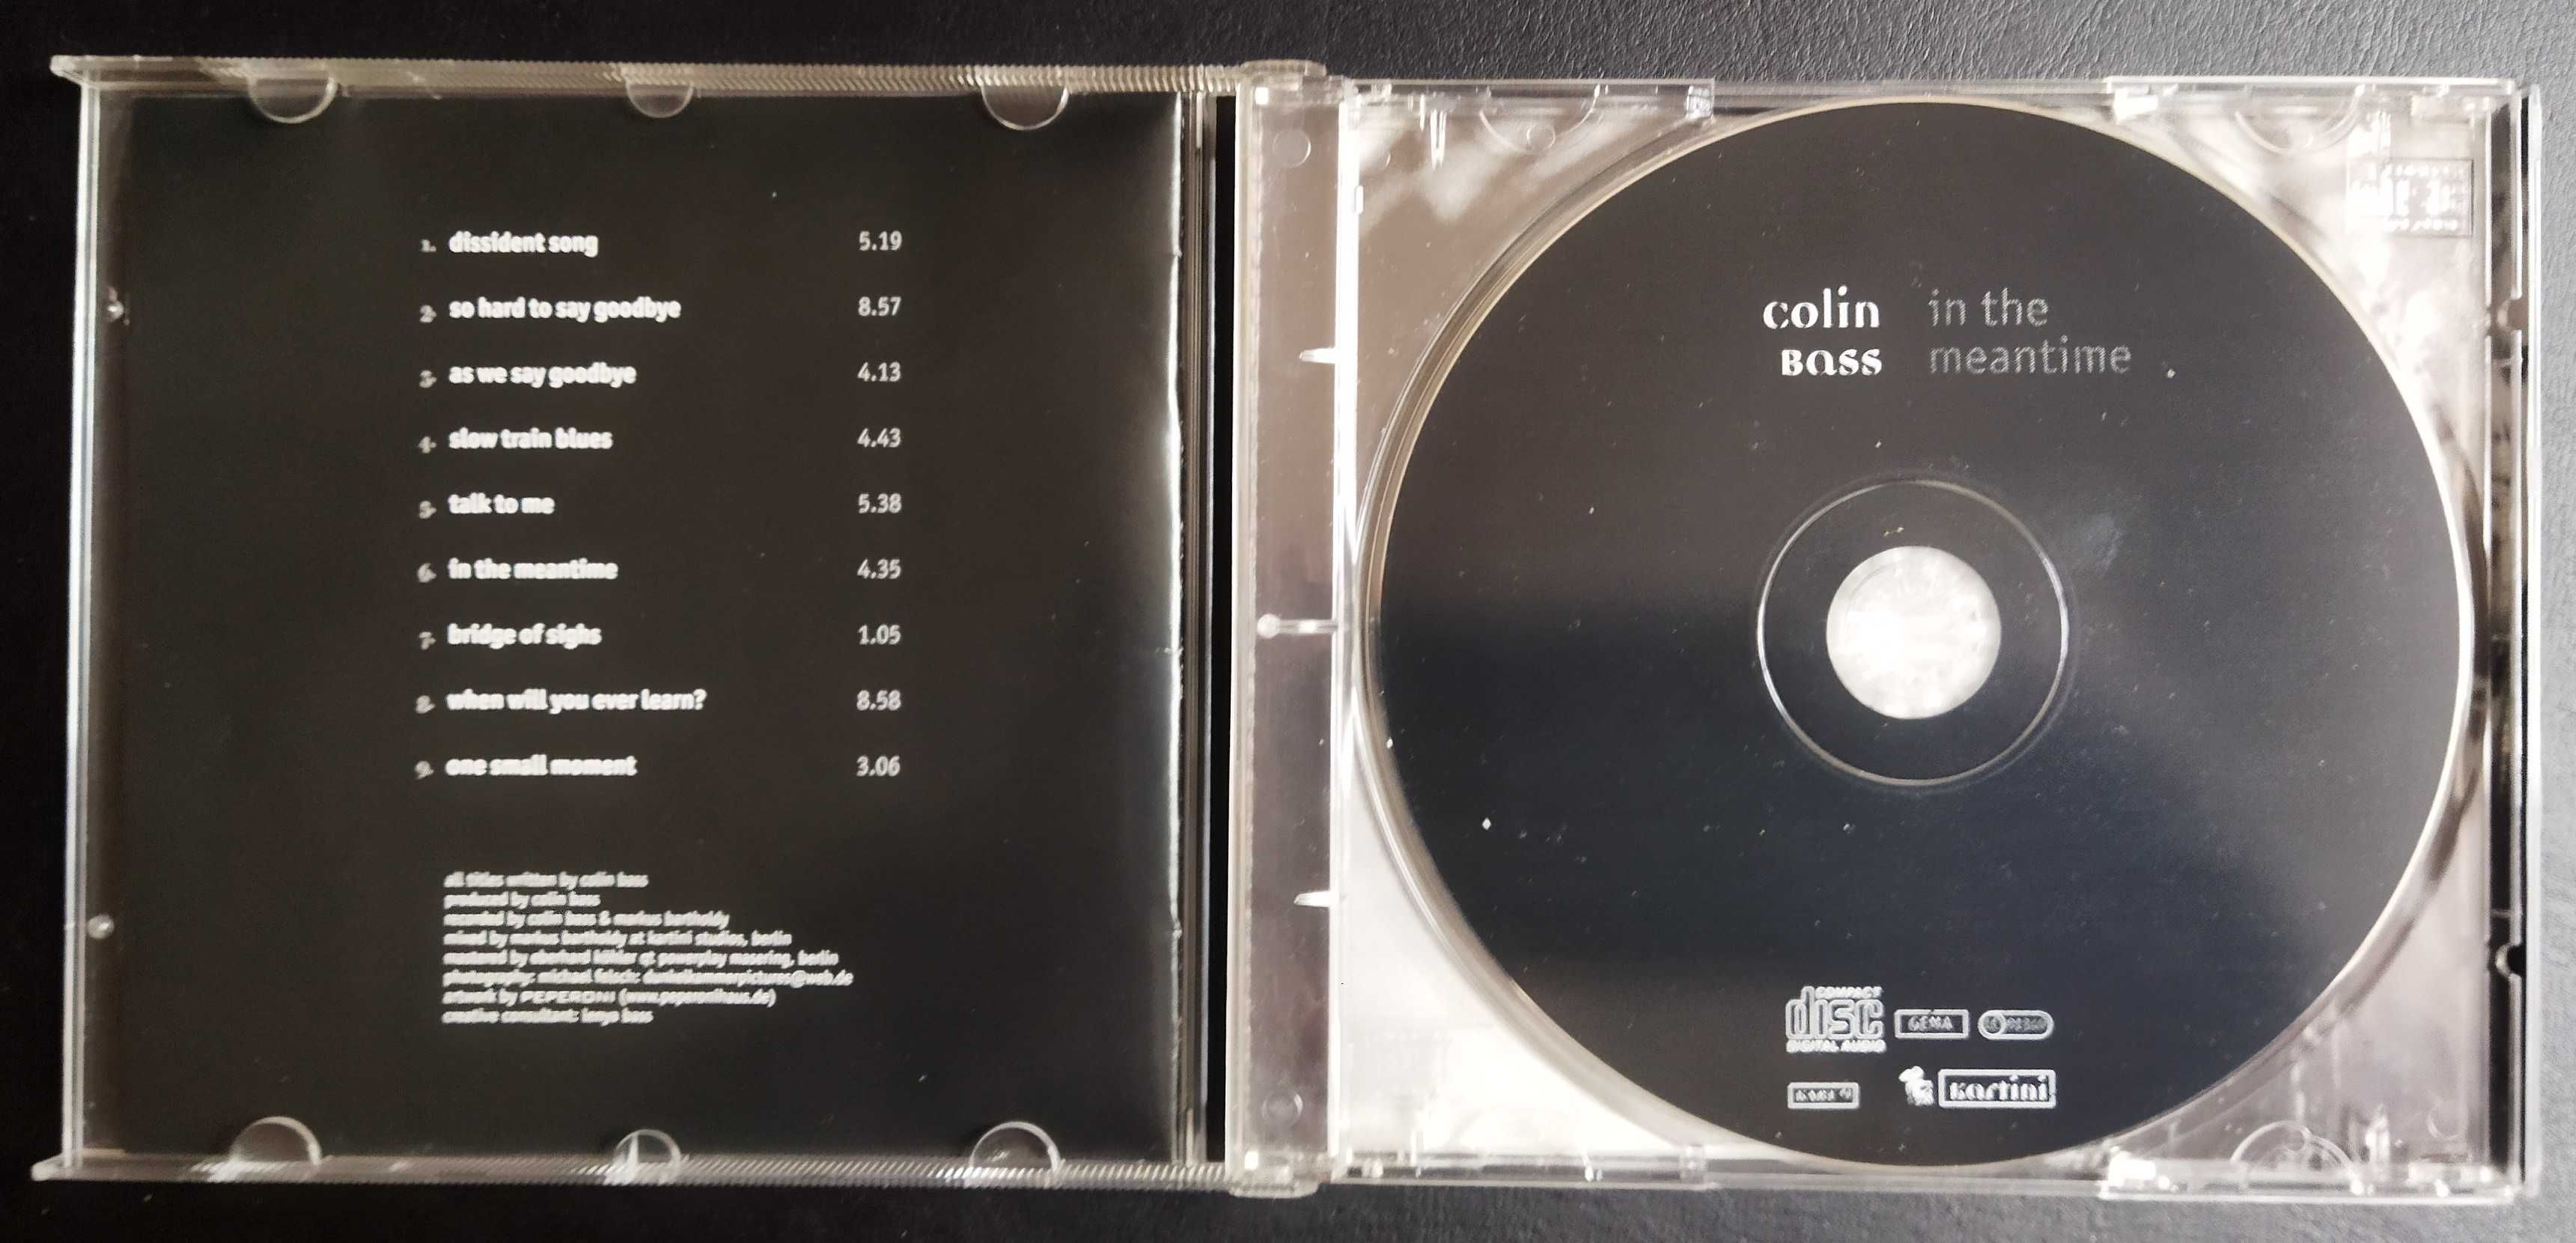 Płyta CD Colin Bass "As far as I can see" 1998